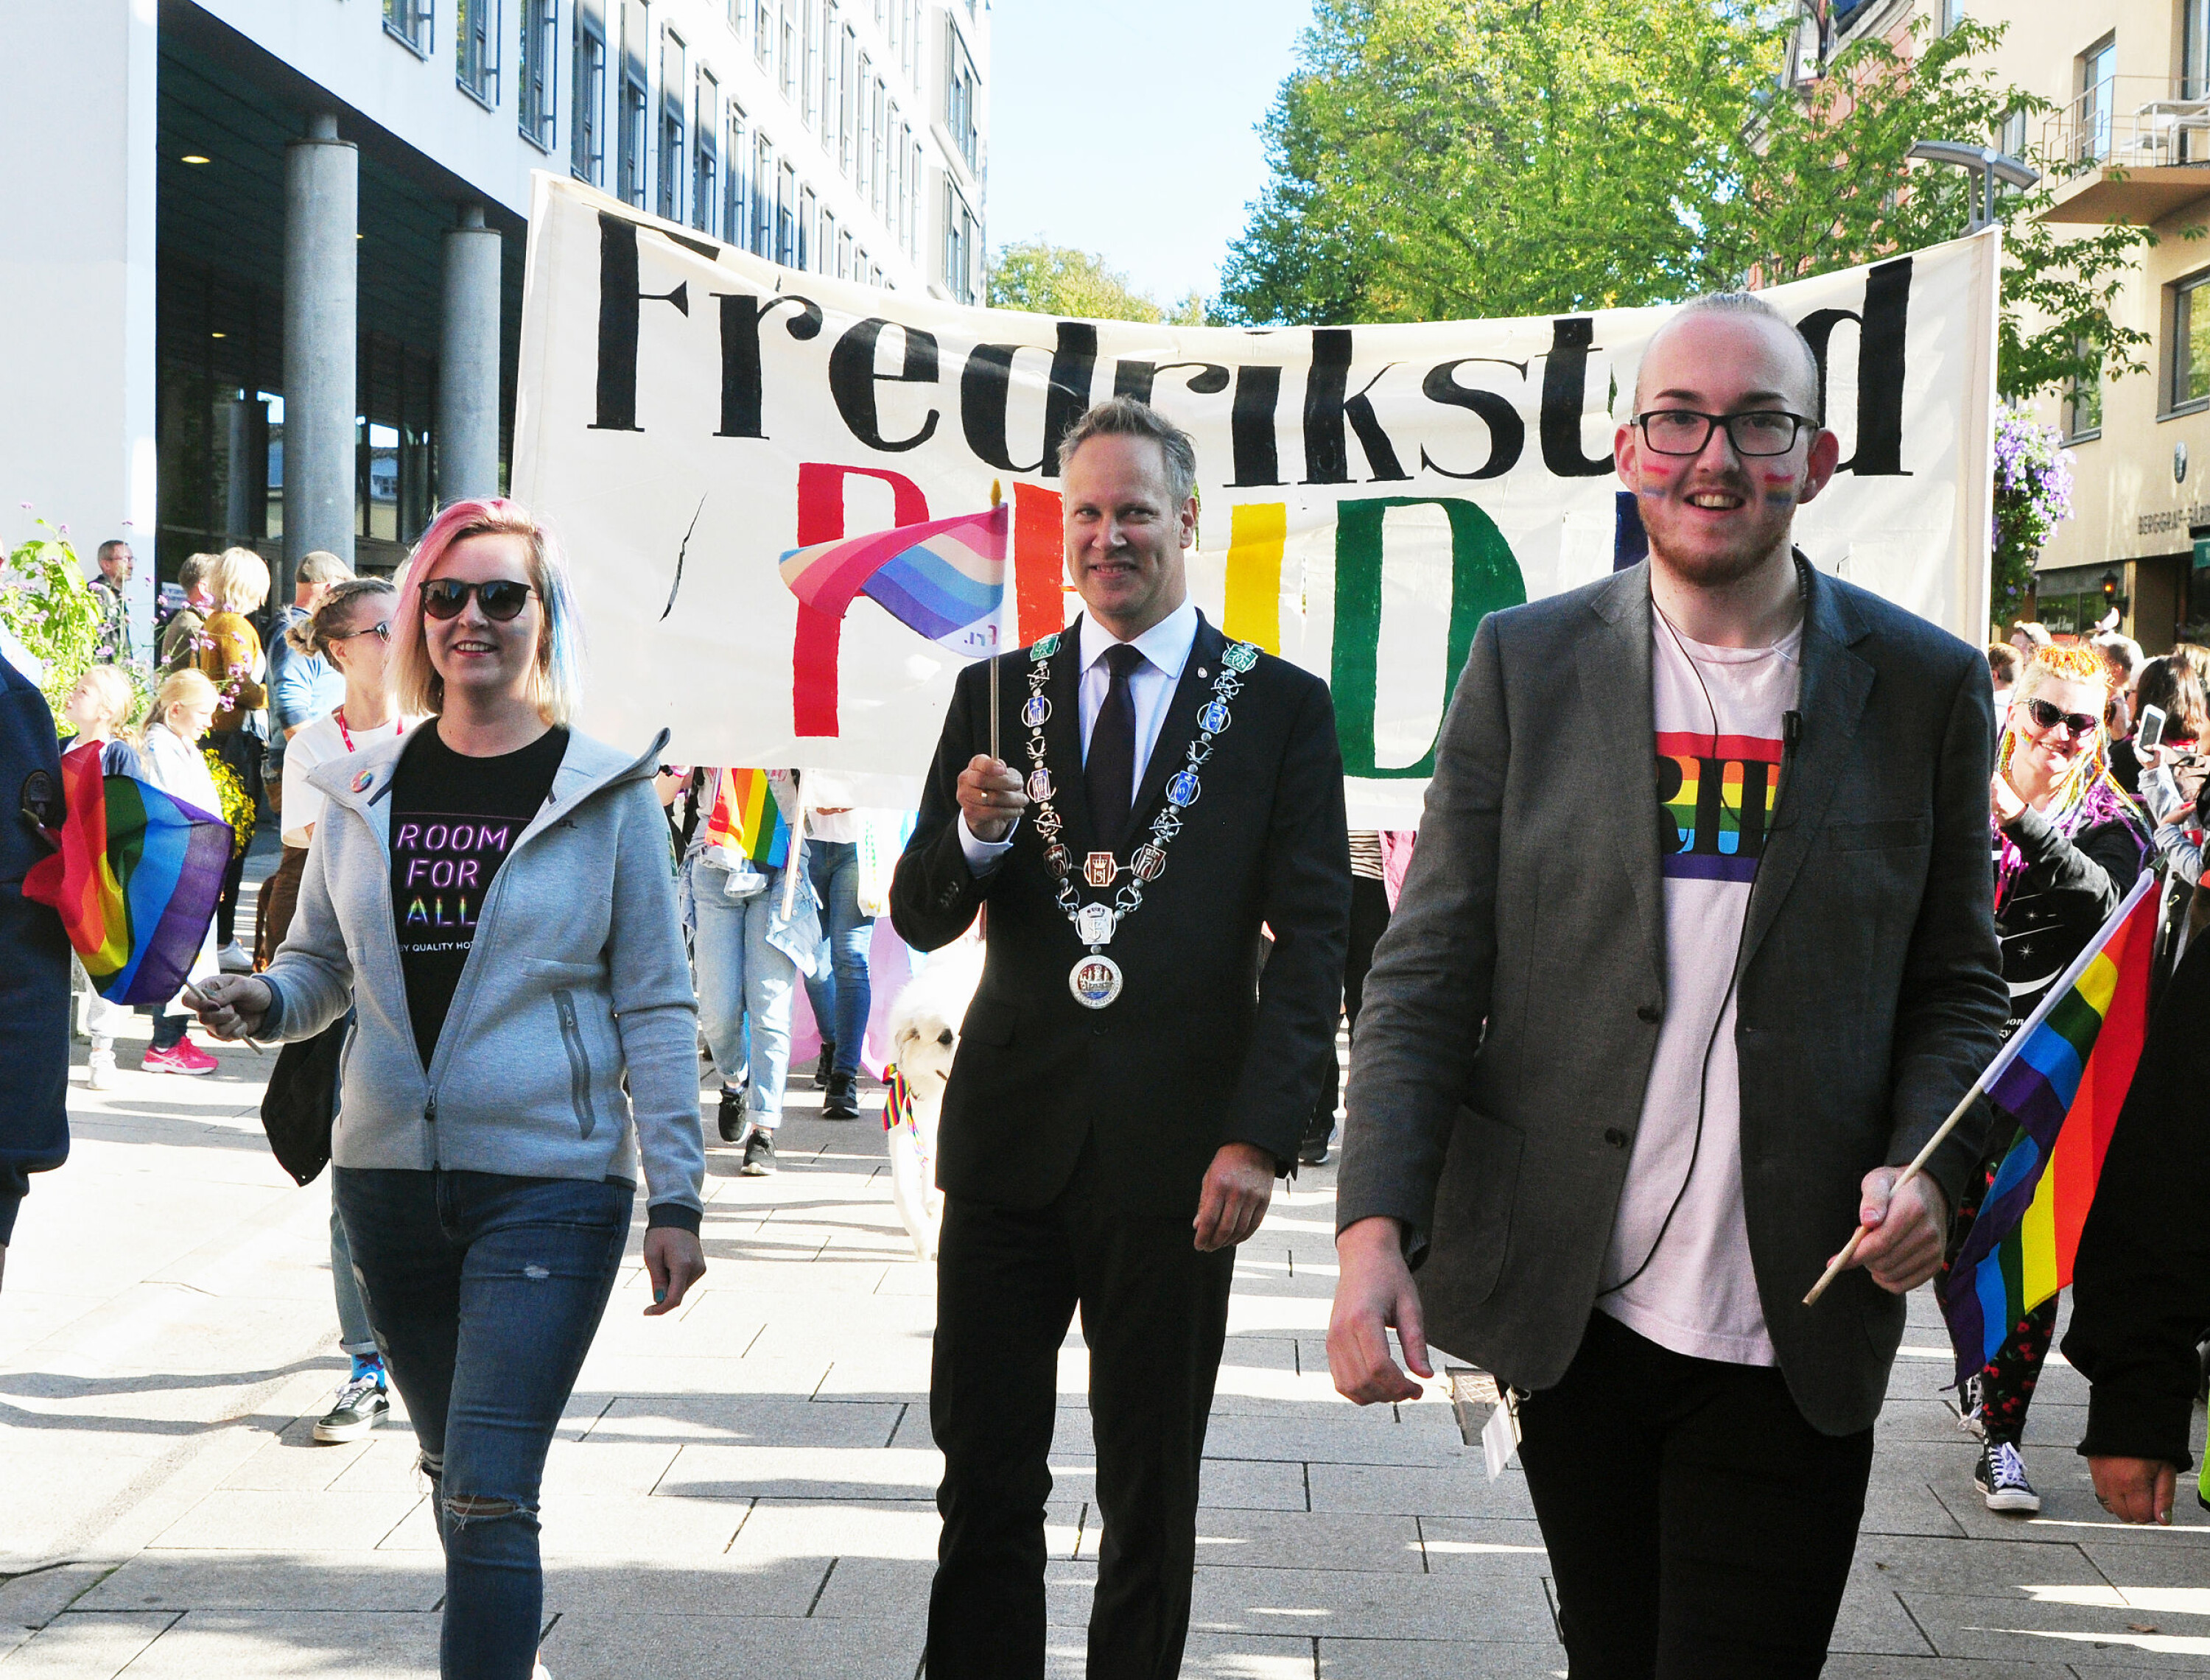 Fredrikstads ordfører Jon-Ivar Nygård og Kristoffer Lorang Mathisen under Fredrikstad Pride 2018.